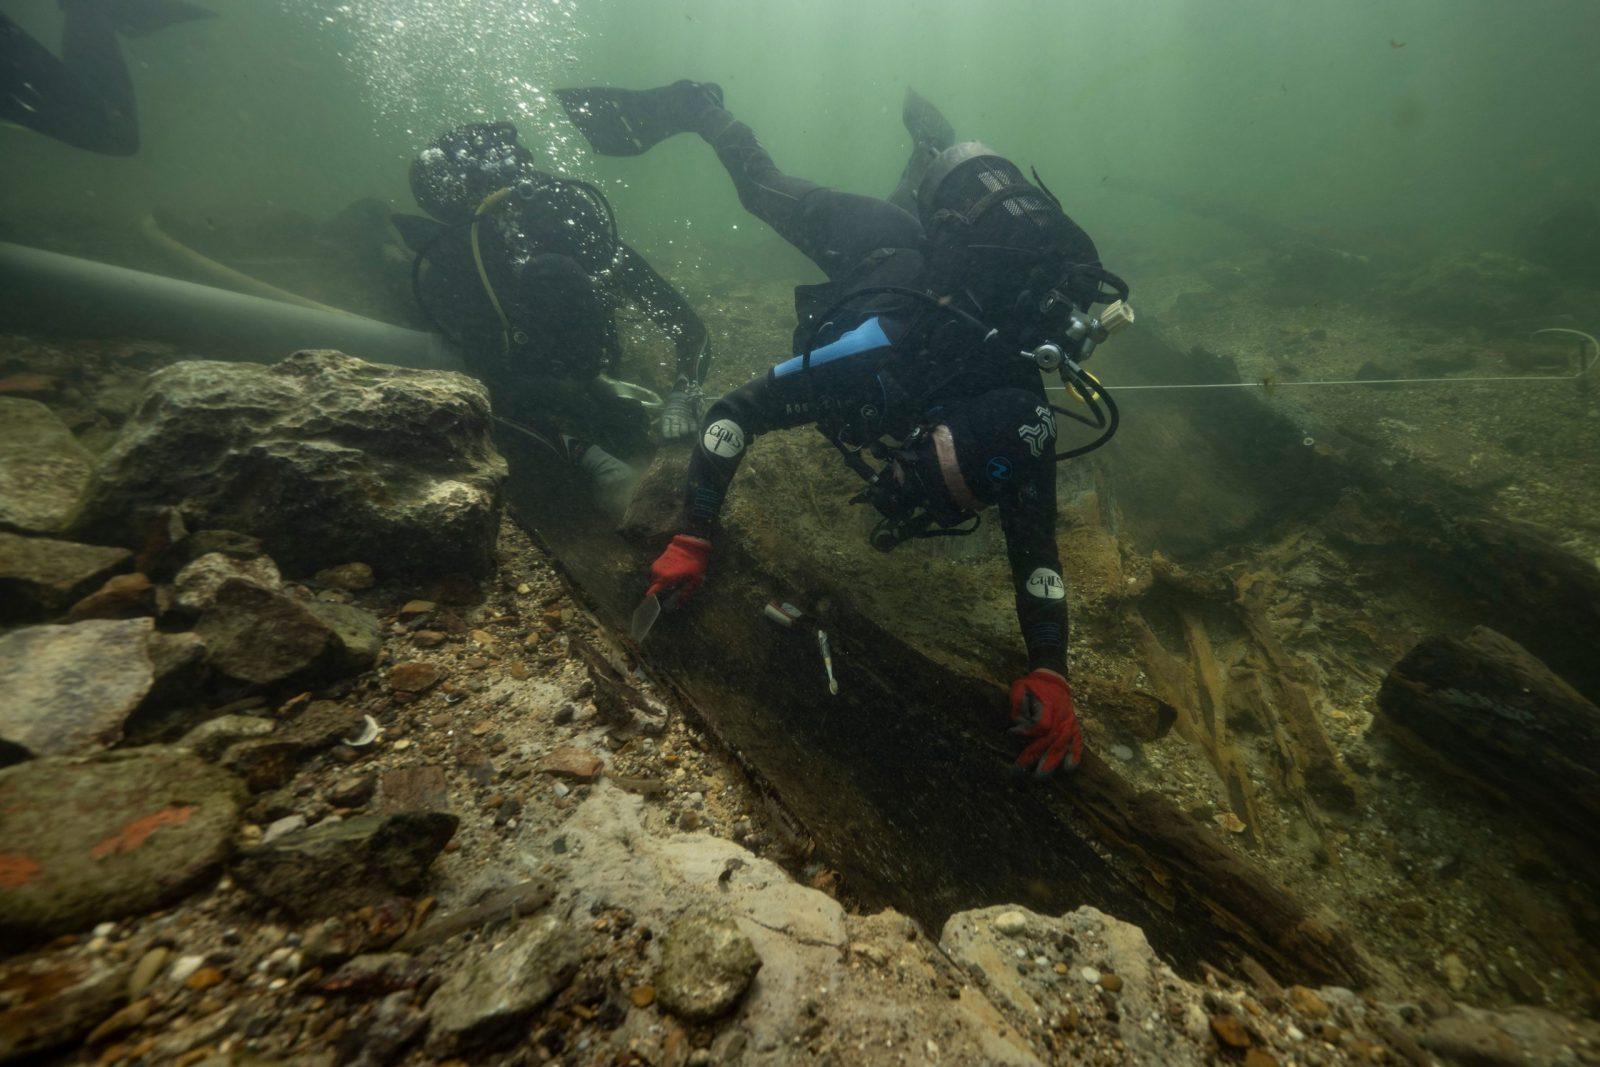 Podvodno arheološko istraživanje sa ciljem proučavanja nautičkih aspekata drevne Segestike i Siscije!